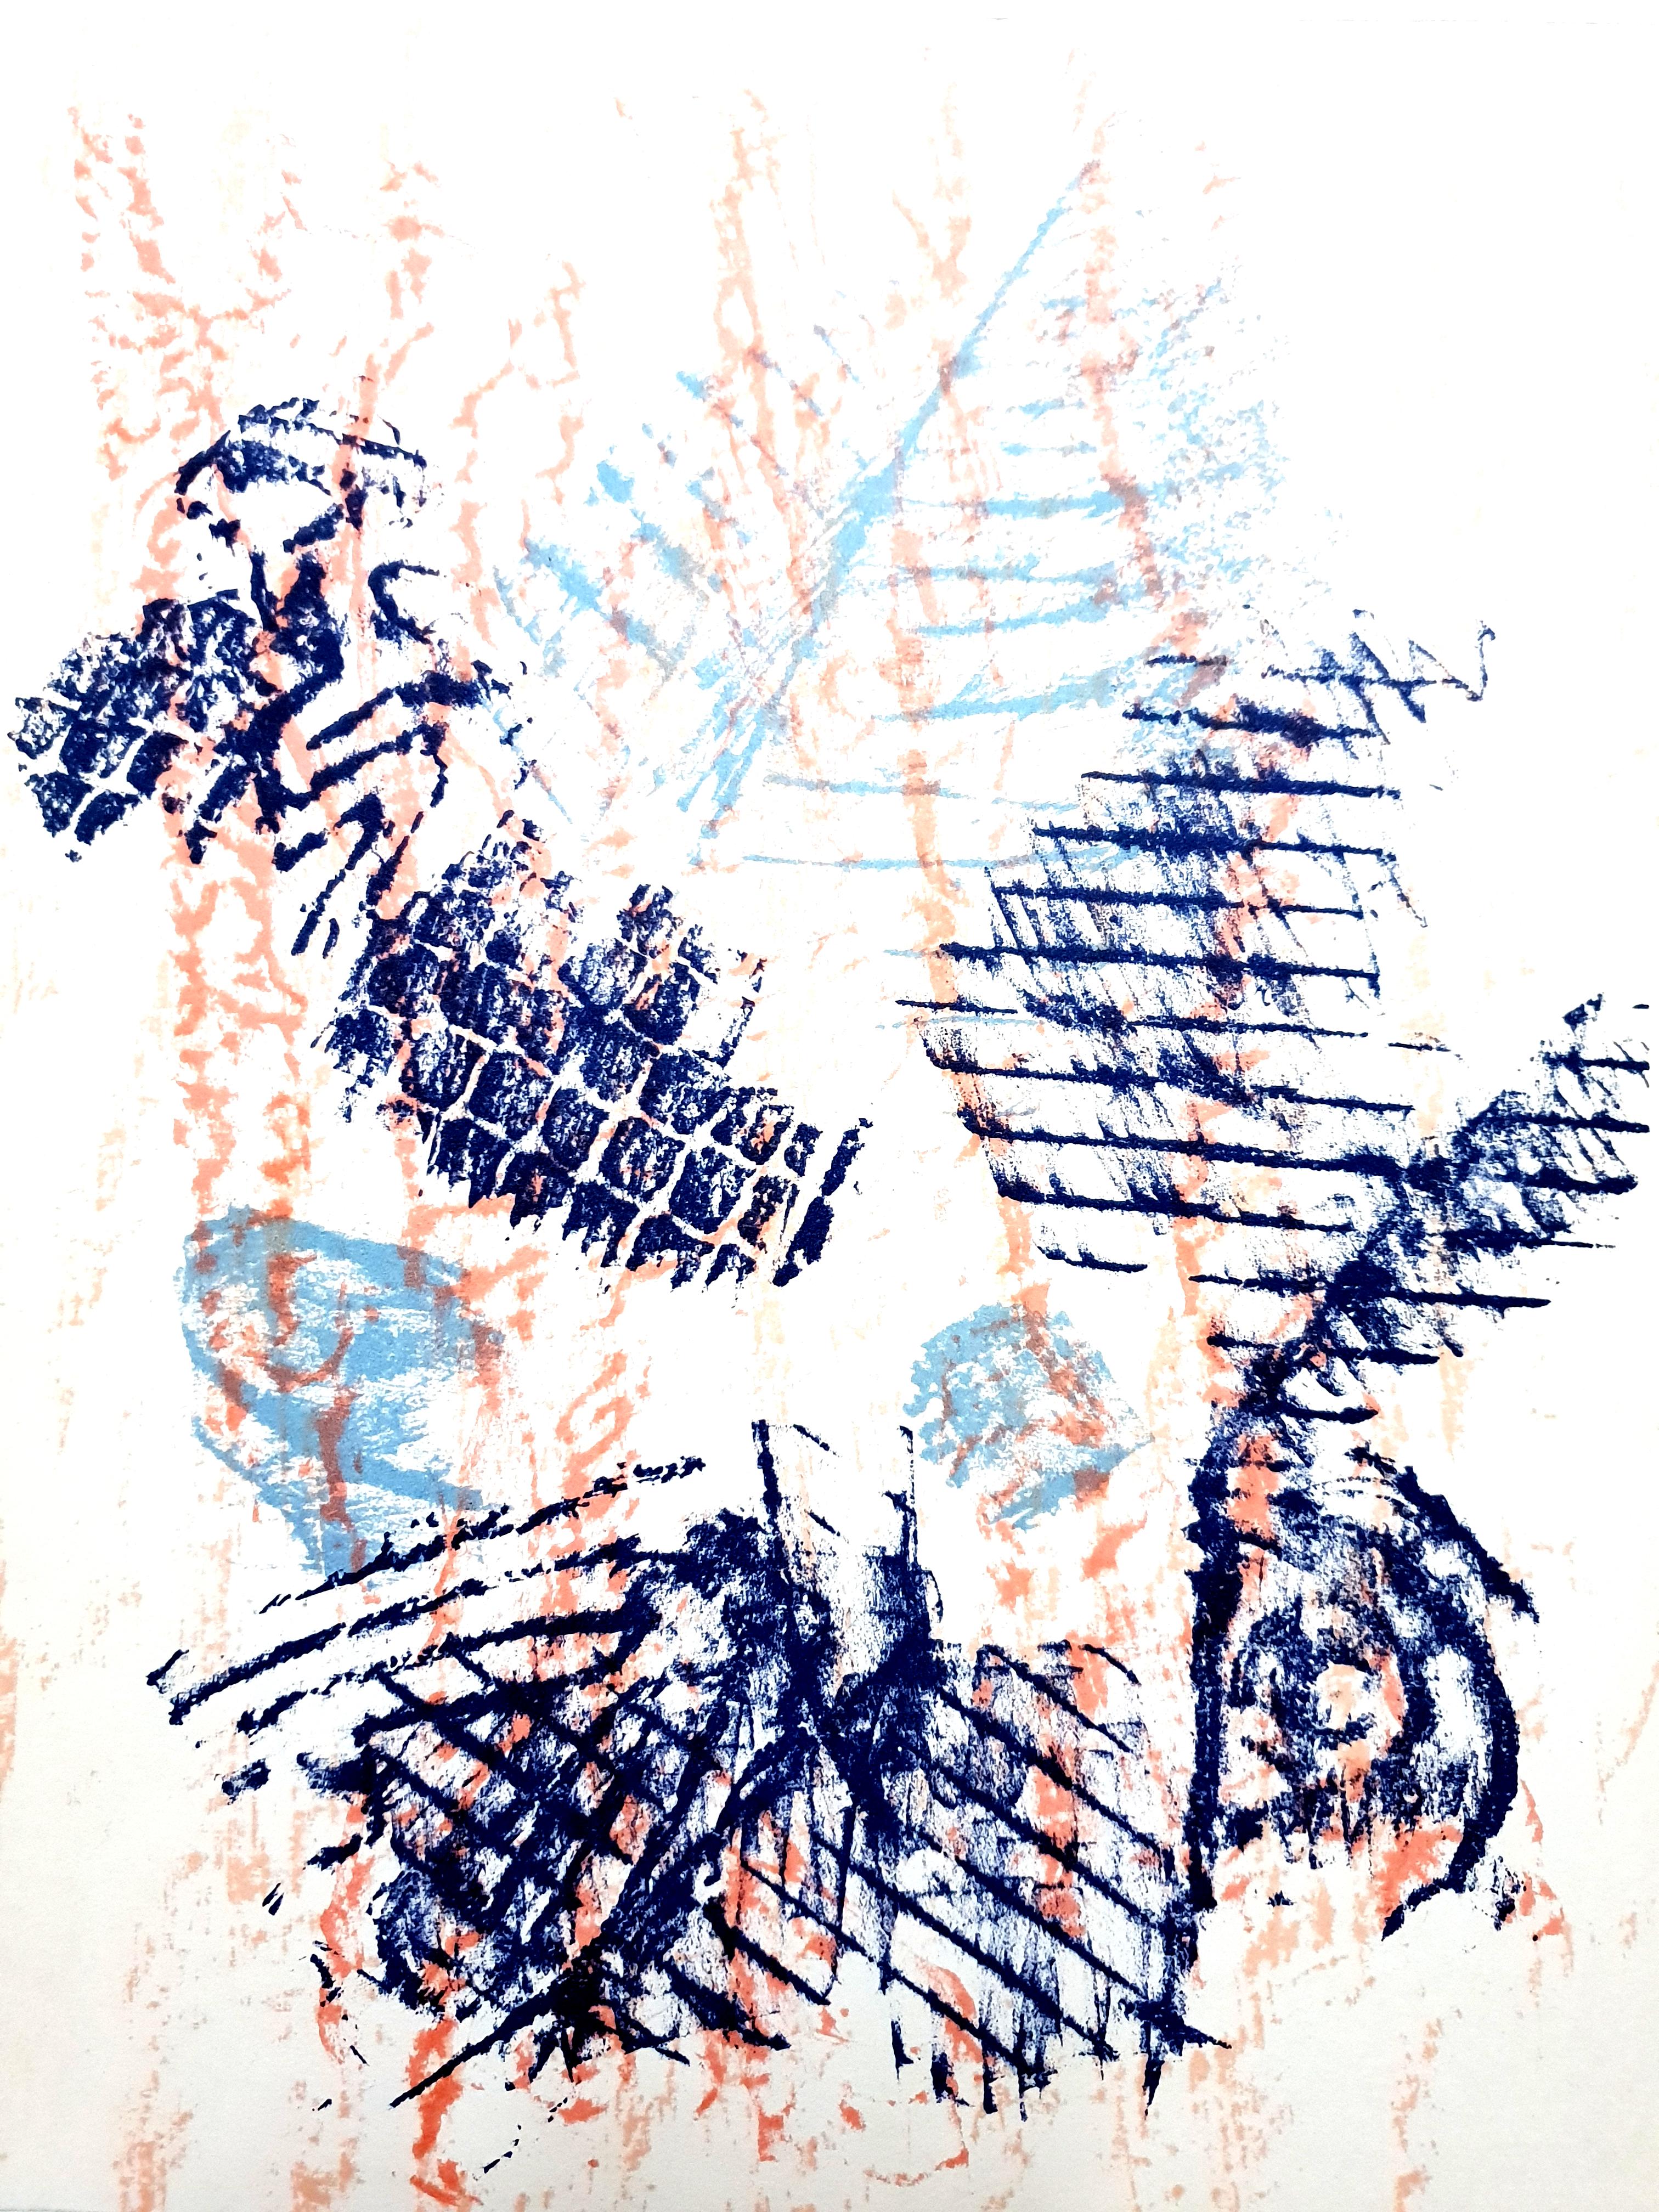 Max Ernst – Vögel –  Original-Lithographie
Vögel, 1964 
Abmessungen: 32 x 24 cm
Aus der Kunstzeitschrift XXe siècle
Unsigniert und nicht nummeriert wie ausgestellt